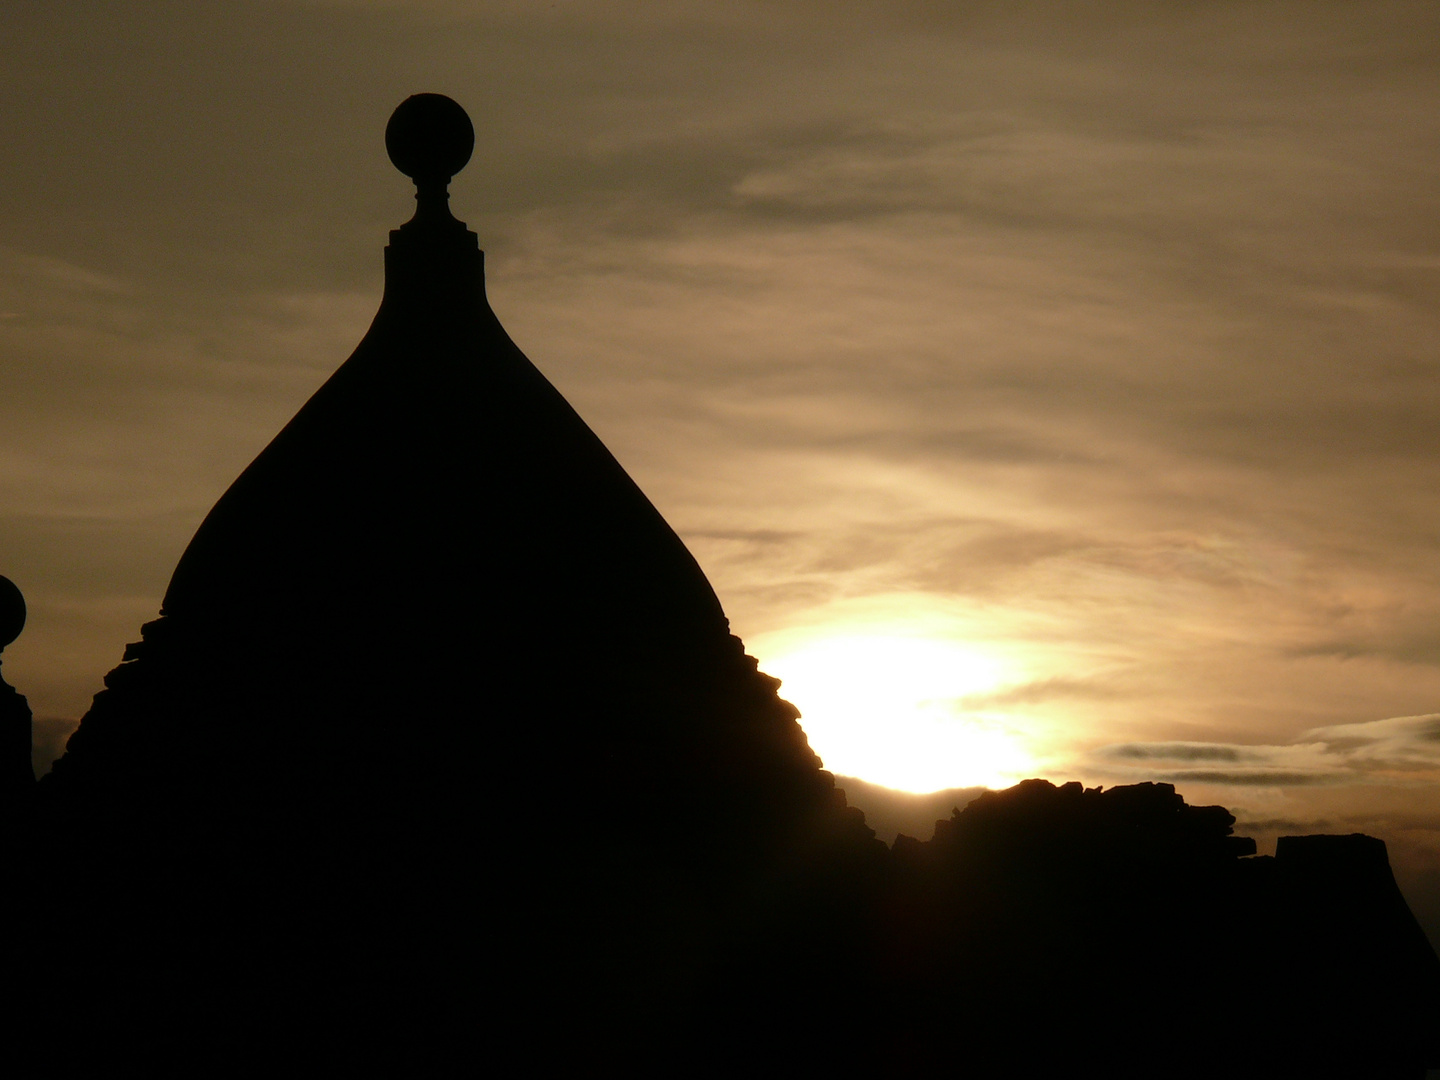 sundown over trulli